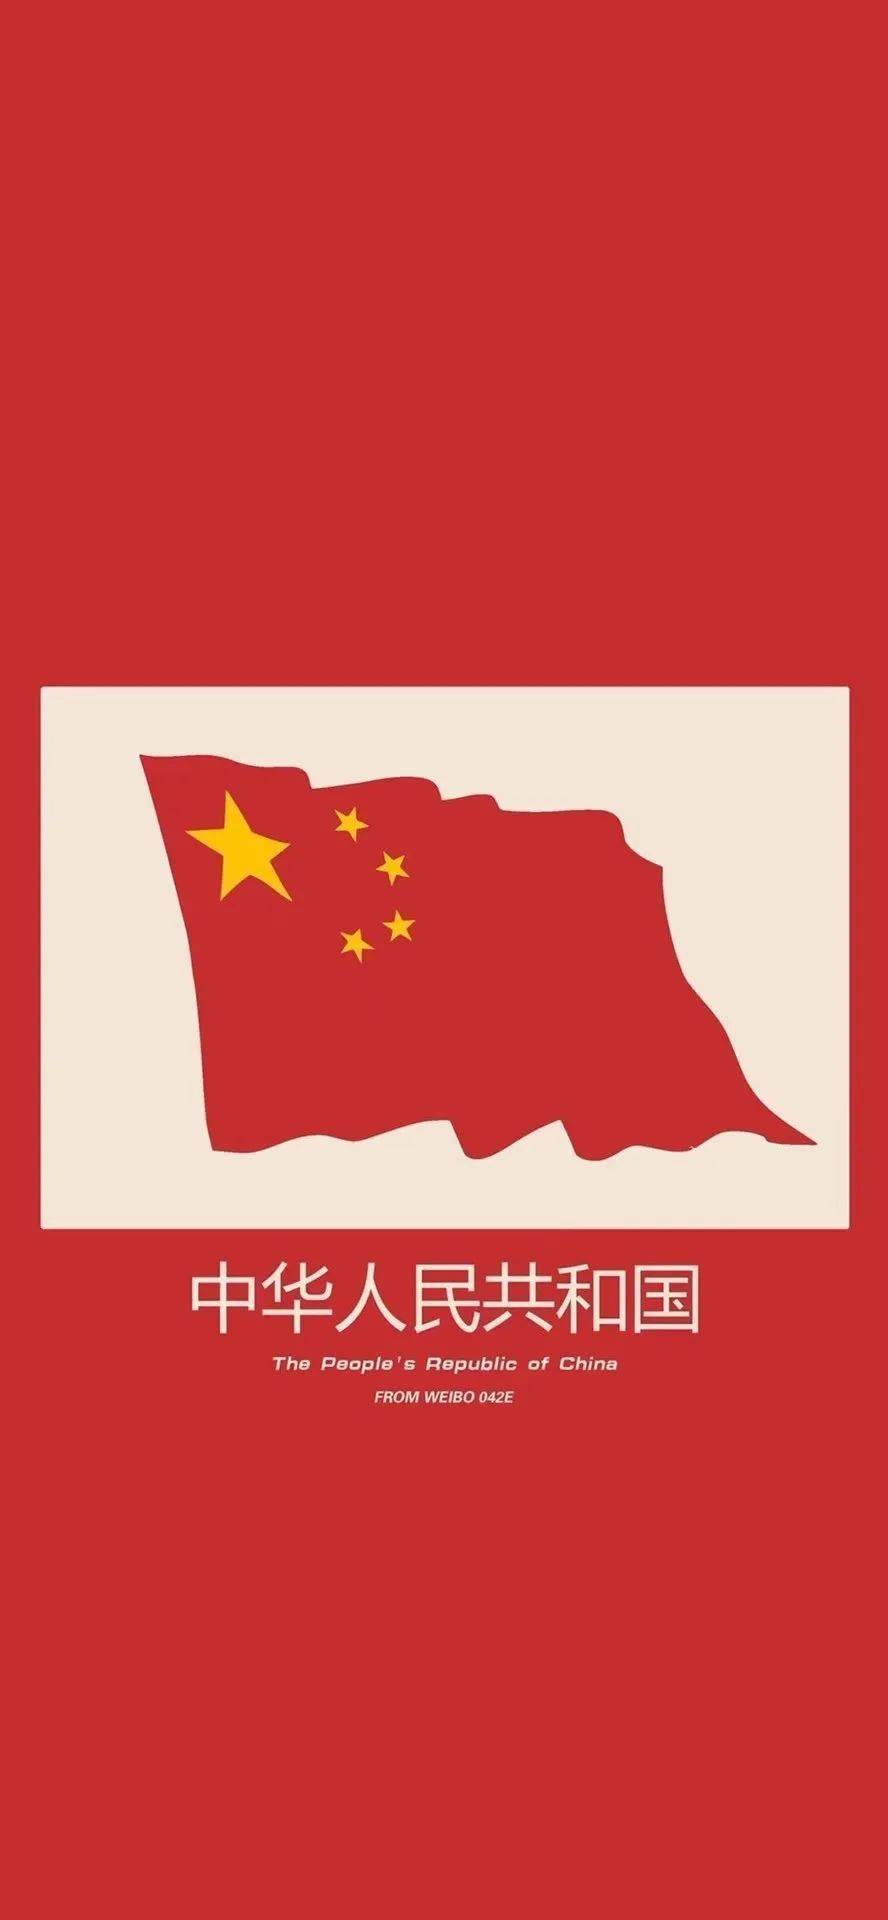 《壁纸》中国人的中国红!爱国!